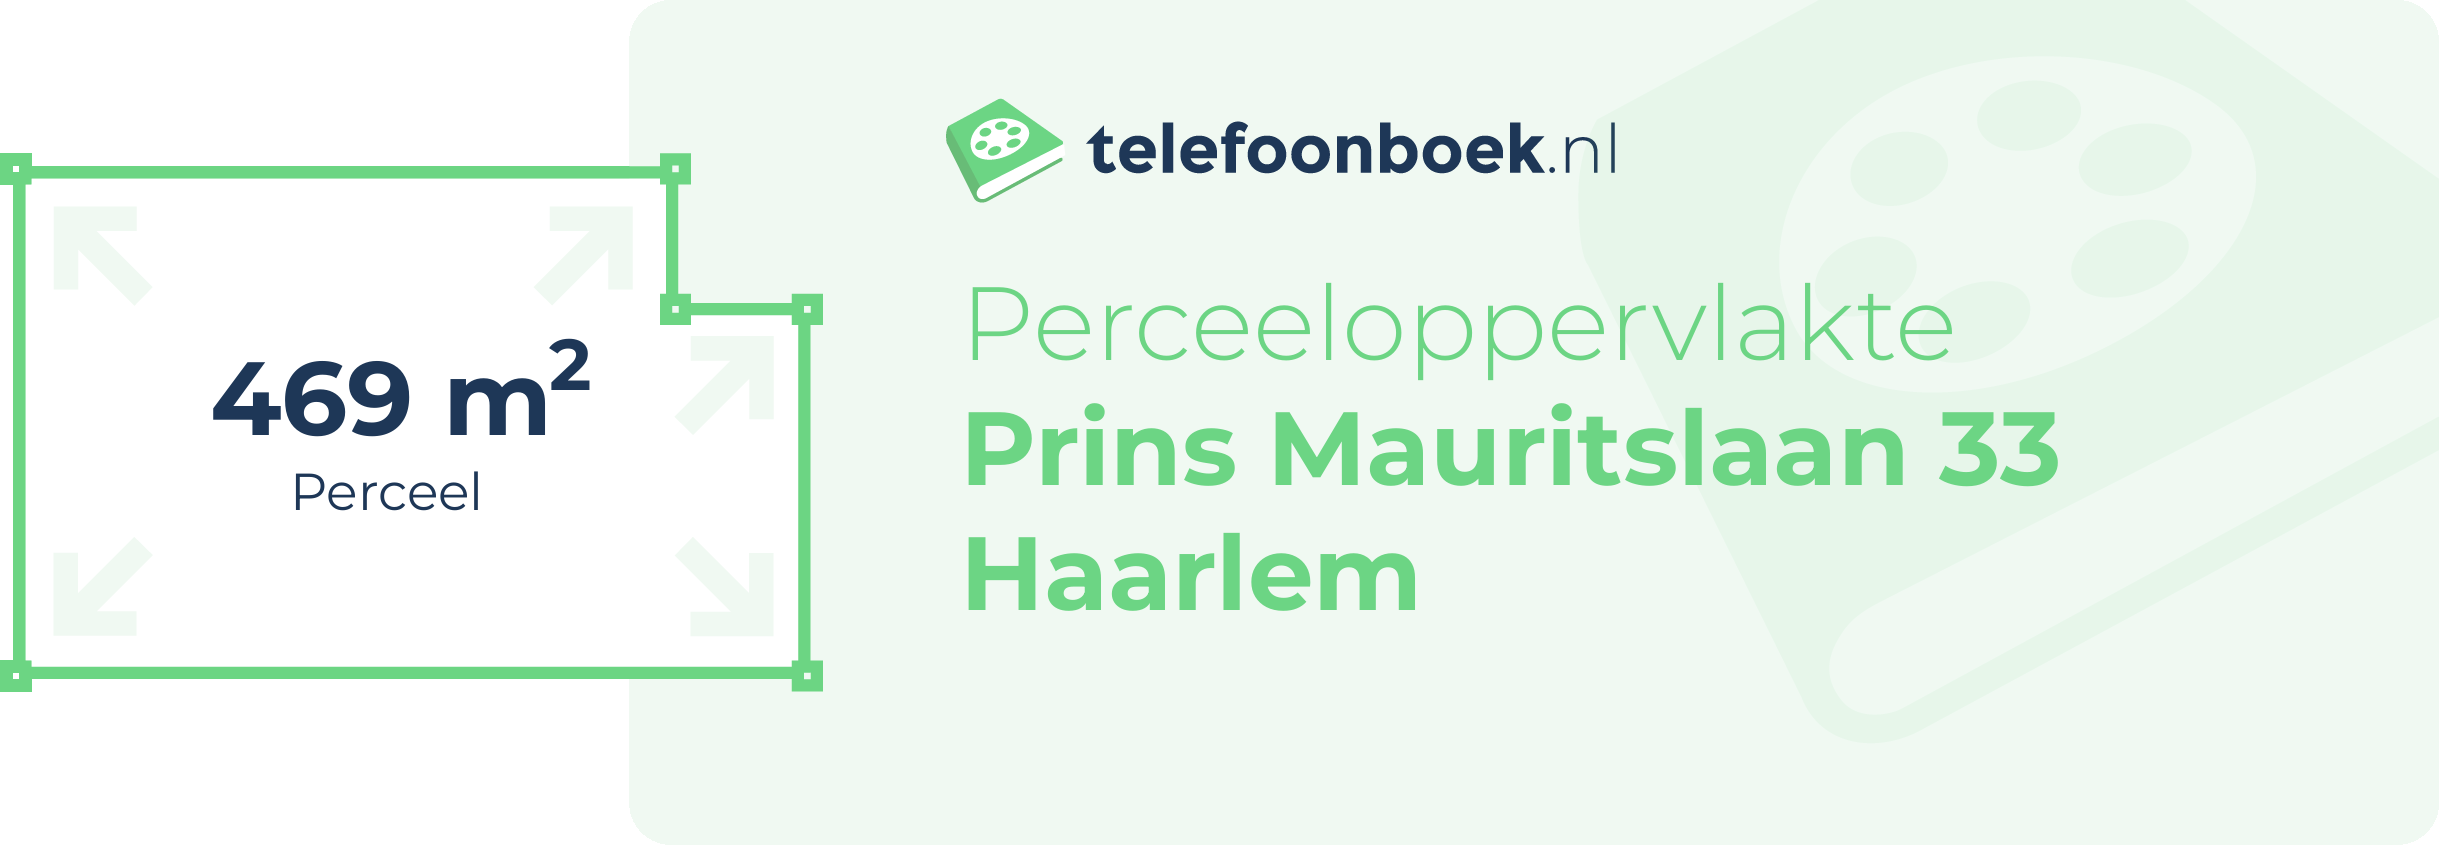 Perceeloppervlakte Prins Mauritslaan 33 Haarlem